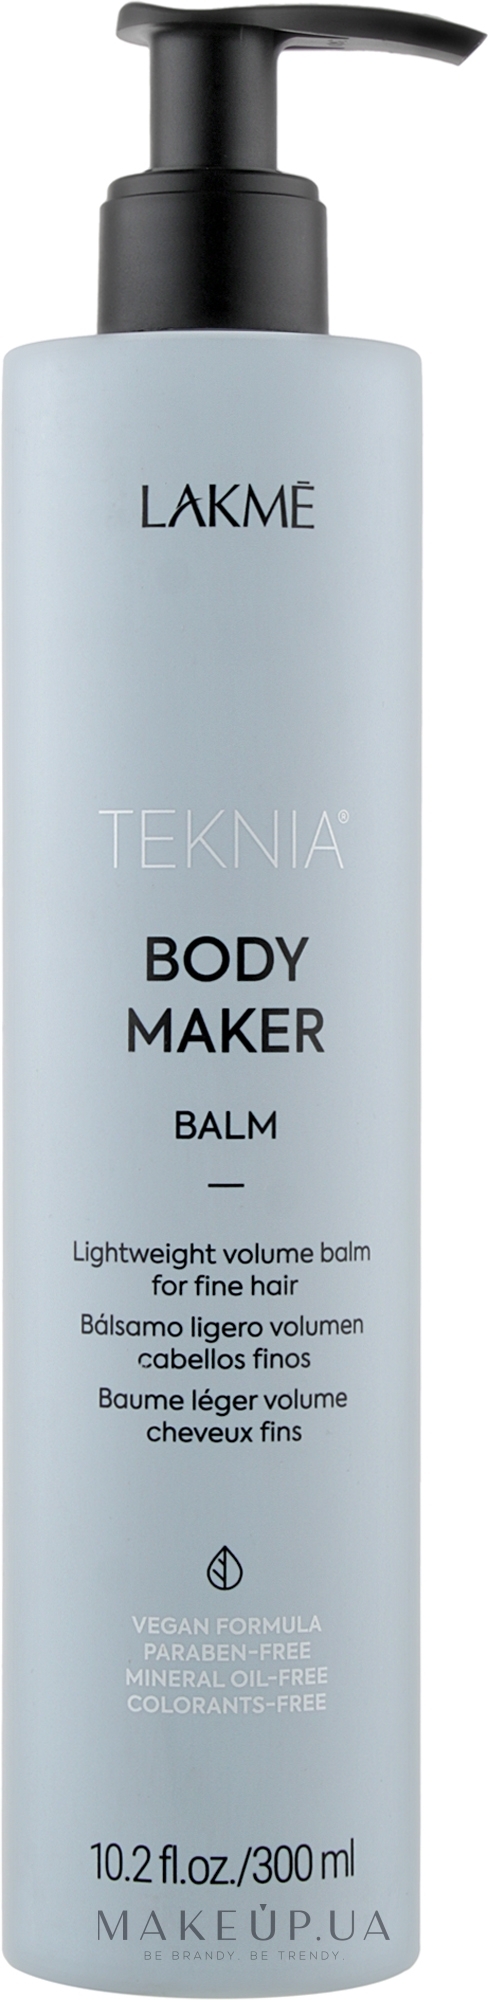 Бальзам для объема волос - Lakme Teknia Body Maker Balm — фото 300ml